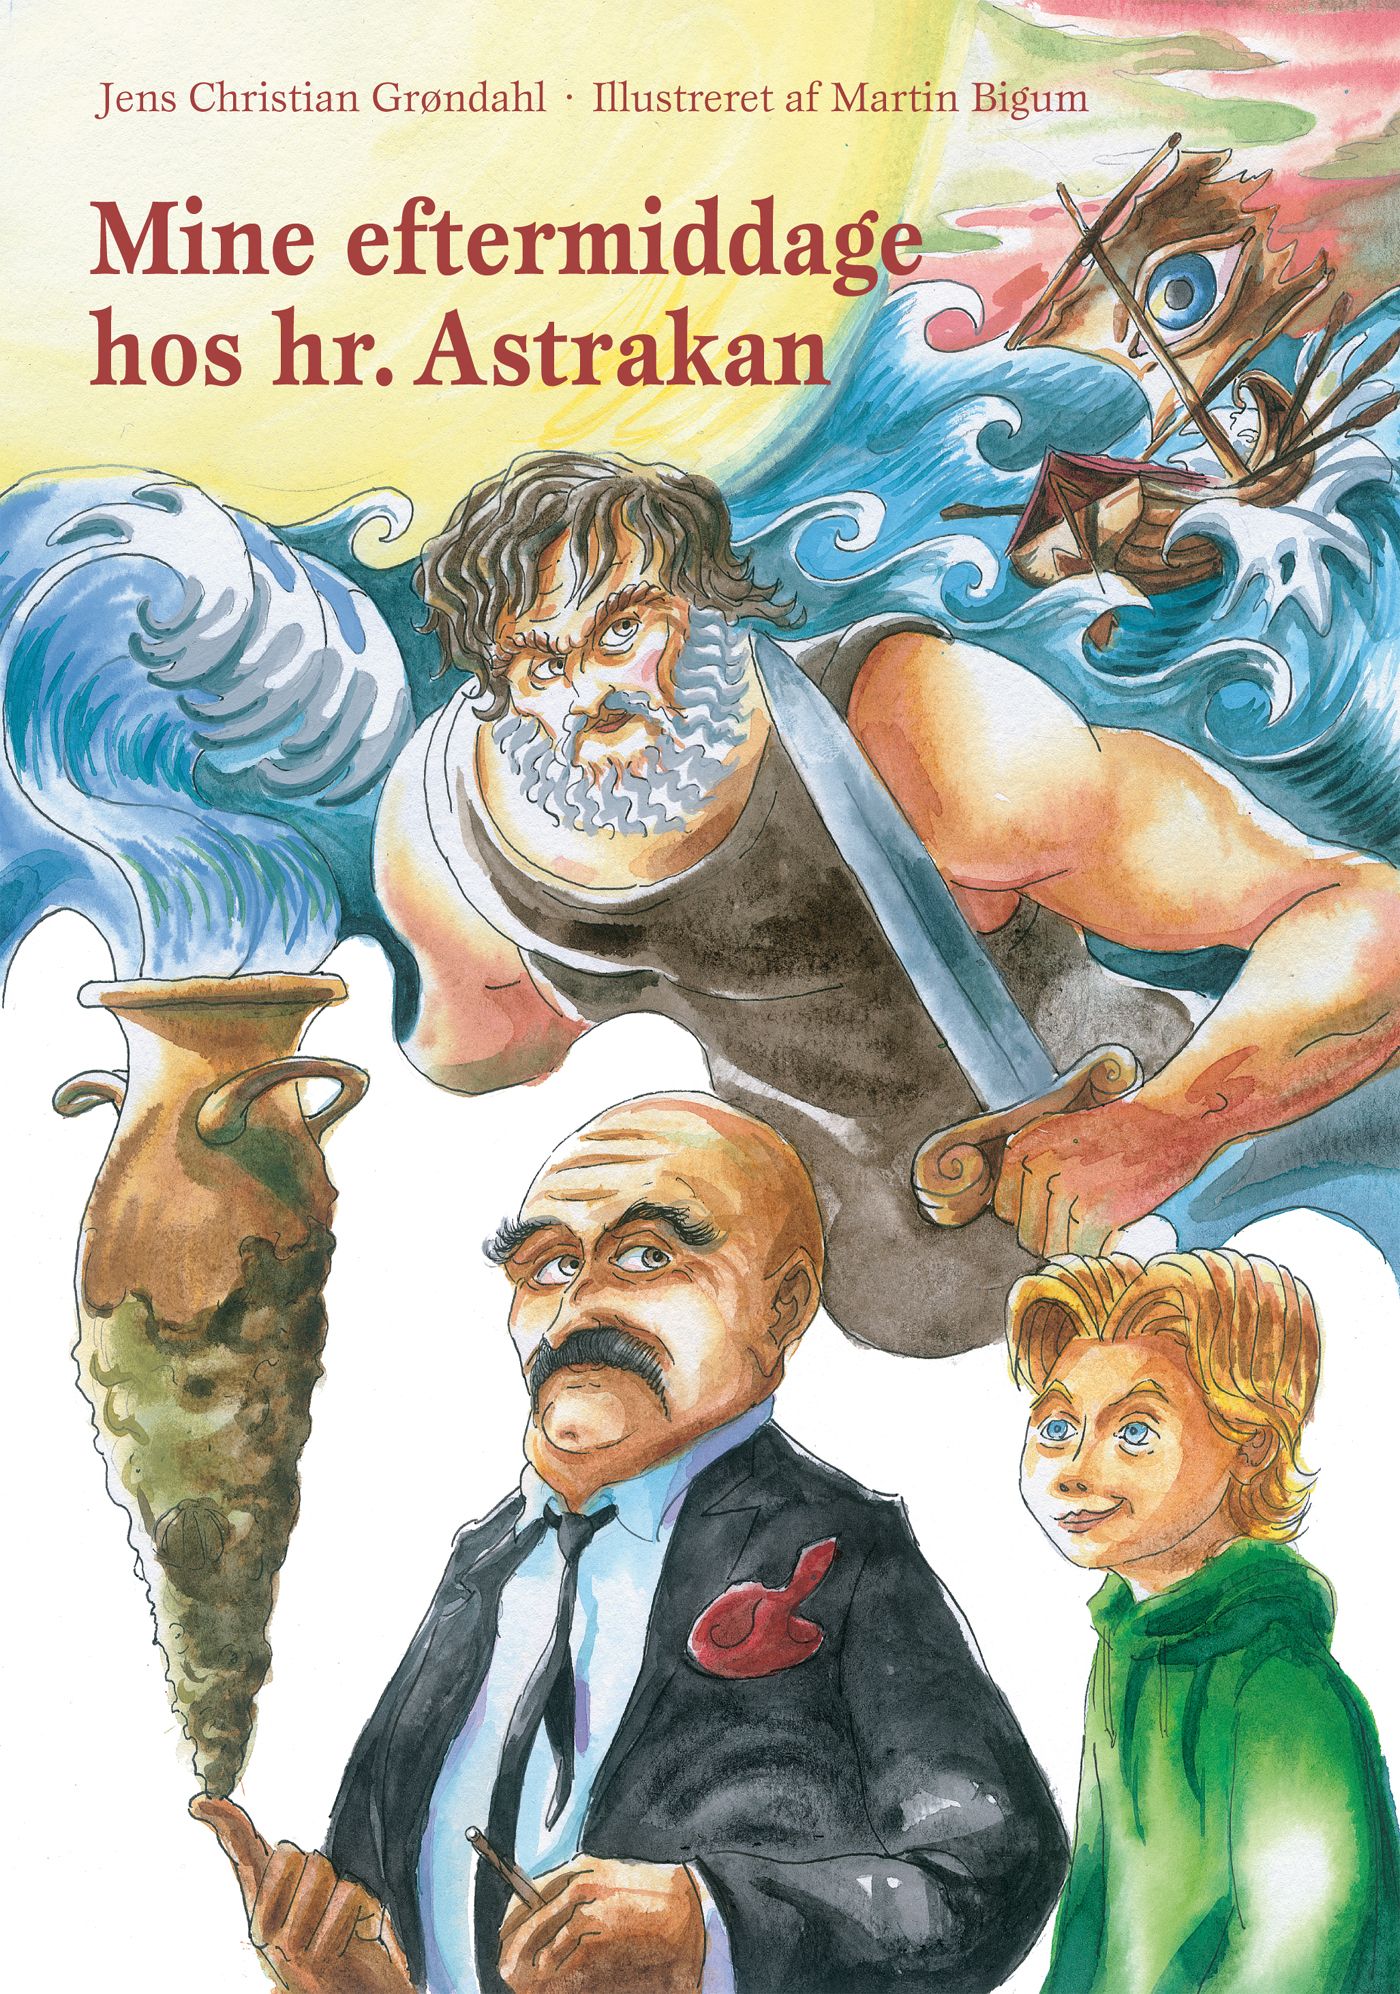 Mine eftermiddage hos hr. Astrakan, e-bok av Jens Christian Grøndahl